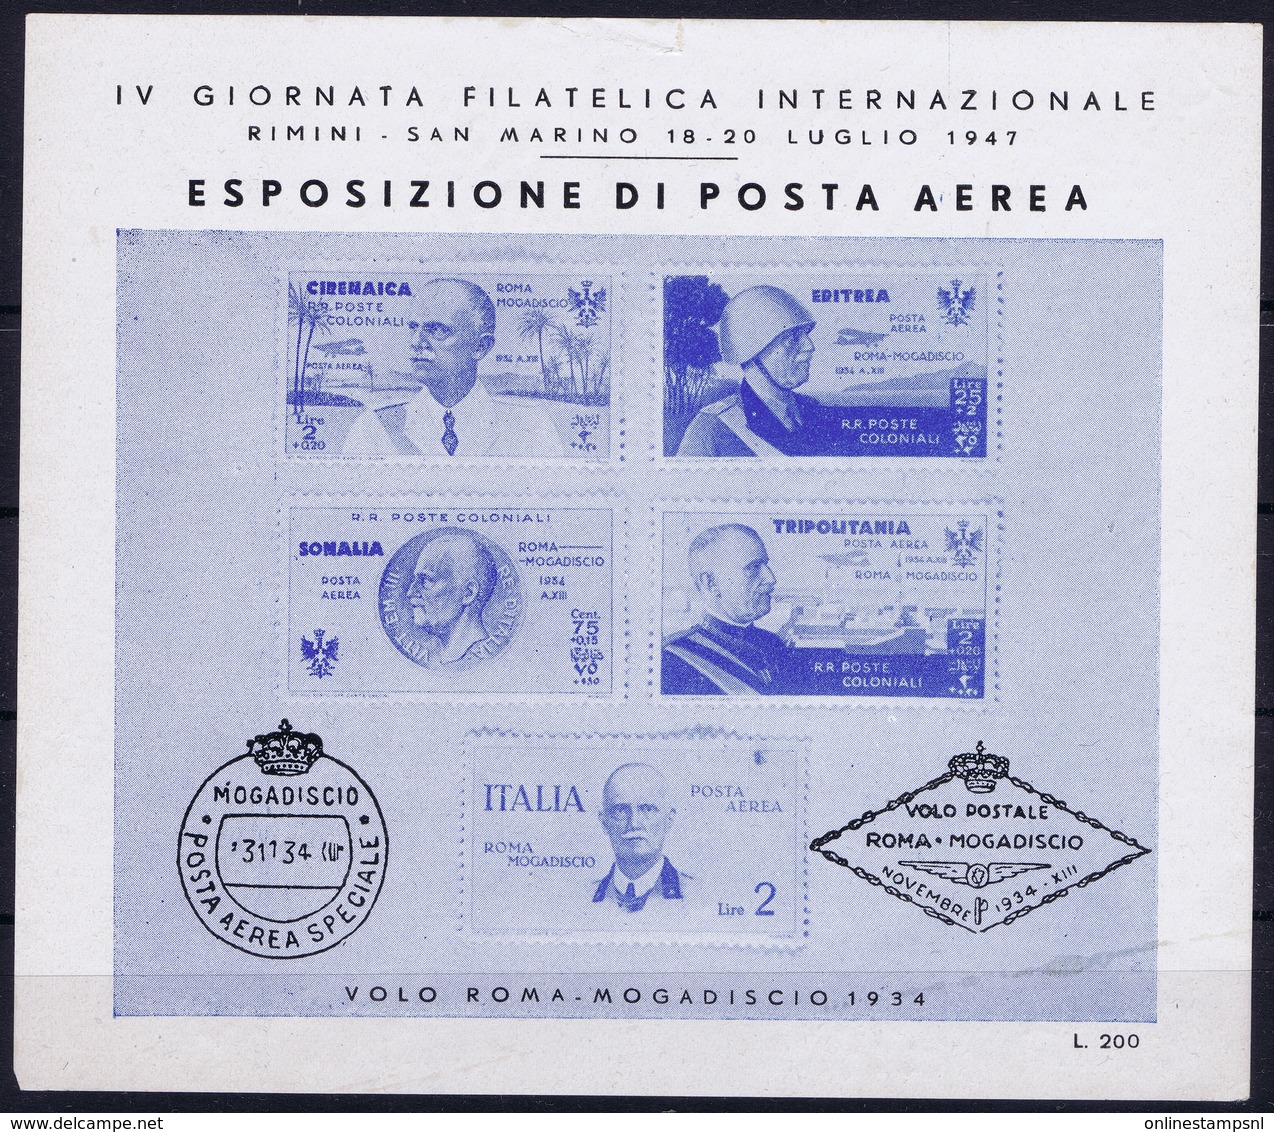 ITALY  ESPOSIZIONE DI POSTA AEREA   IV GIORNATA FILATELICA  VOLO ROMA - MOGADISCIO 1934   RIMINI S. MARINO 1947 - Poste Aérienne